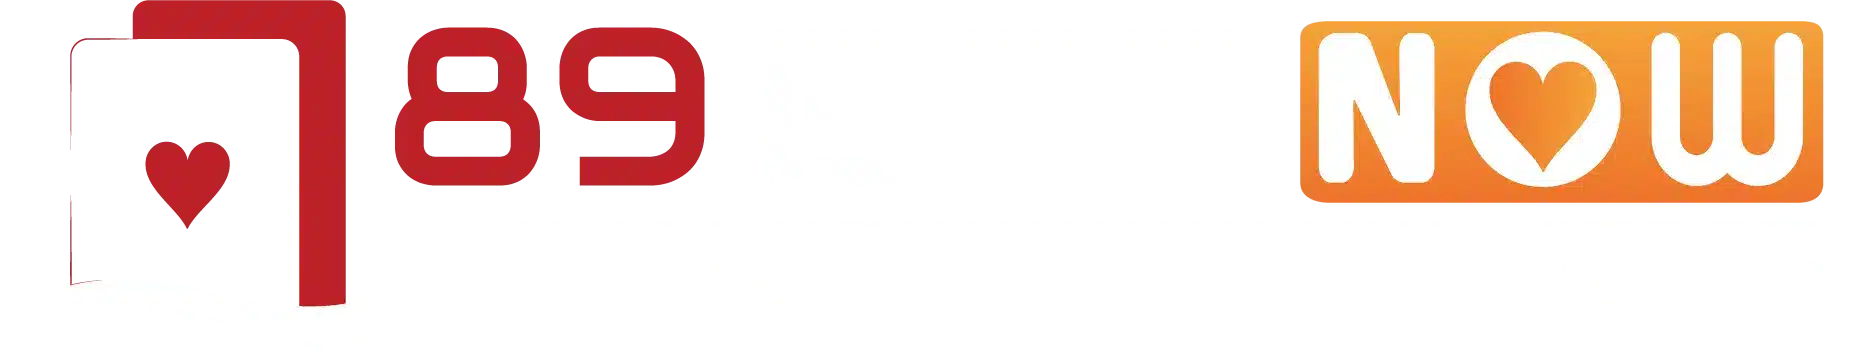 789betnows-logo